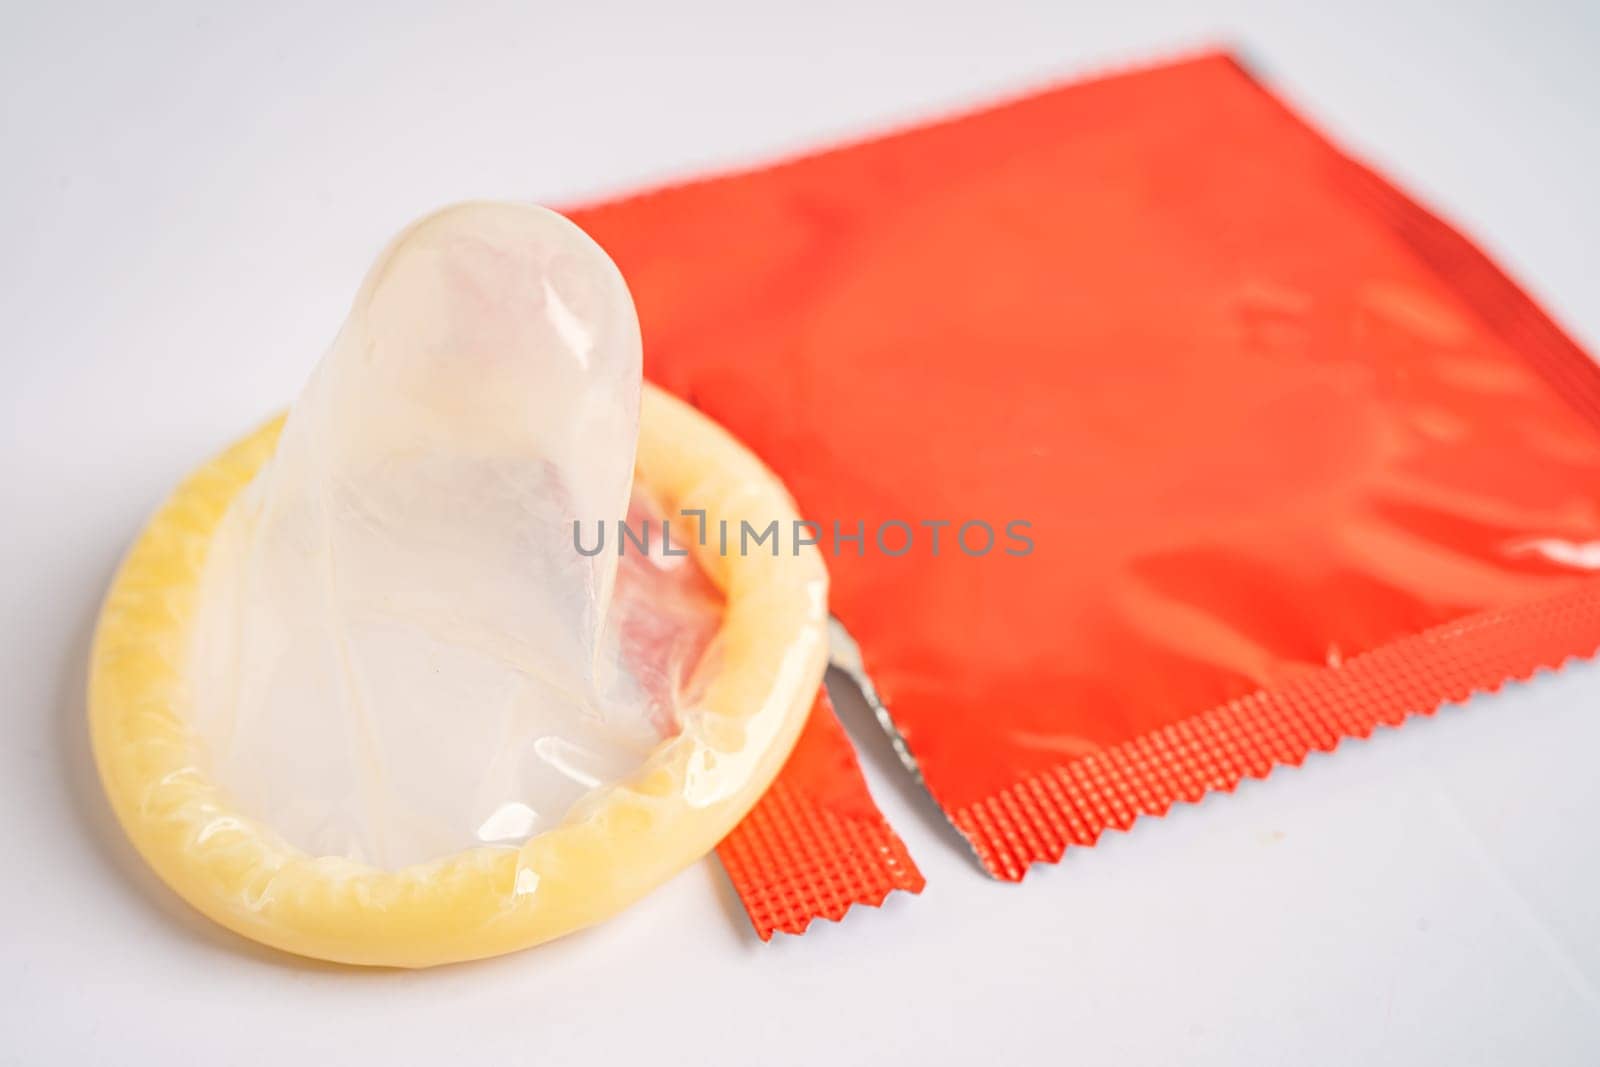 Birth control condom, contraception health and medicine. by pamai